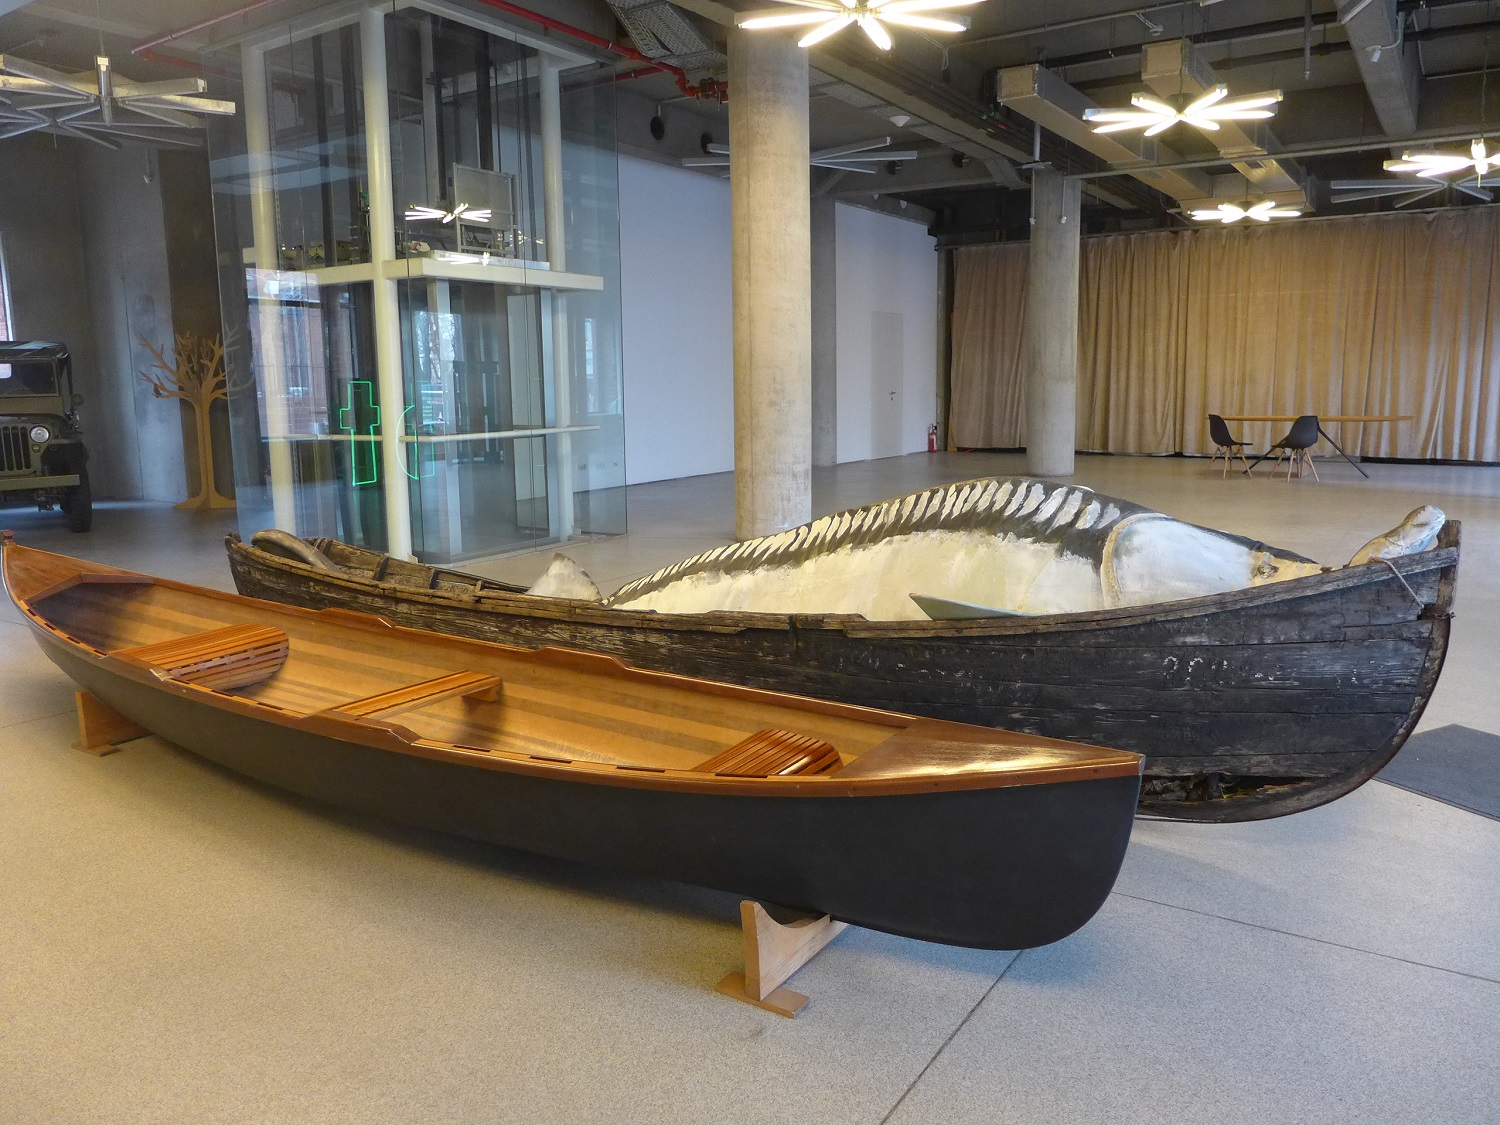 Côte à côte, dans l’entrée du bâtiment : une barque traditionnelle et une canotca, l’embarcation créée par l’association d’Ivan Patzaichin, qui mélange traditions et modernité.